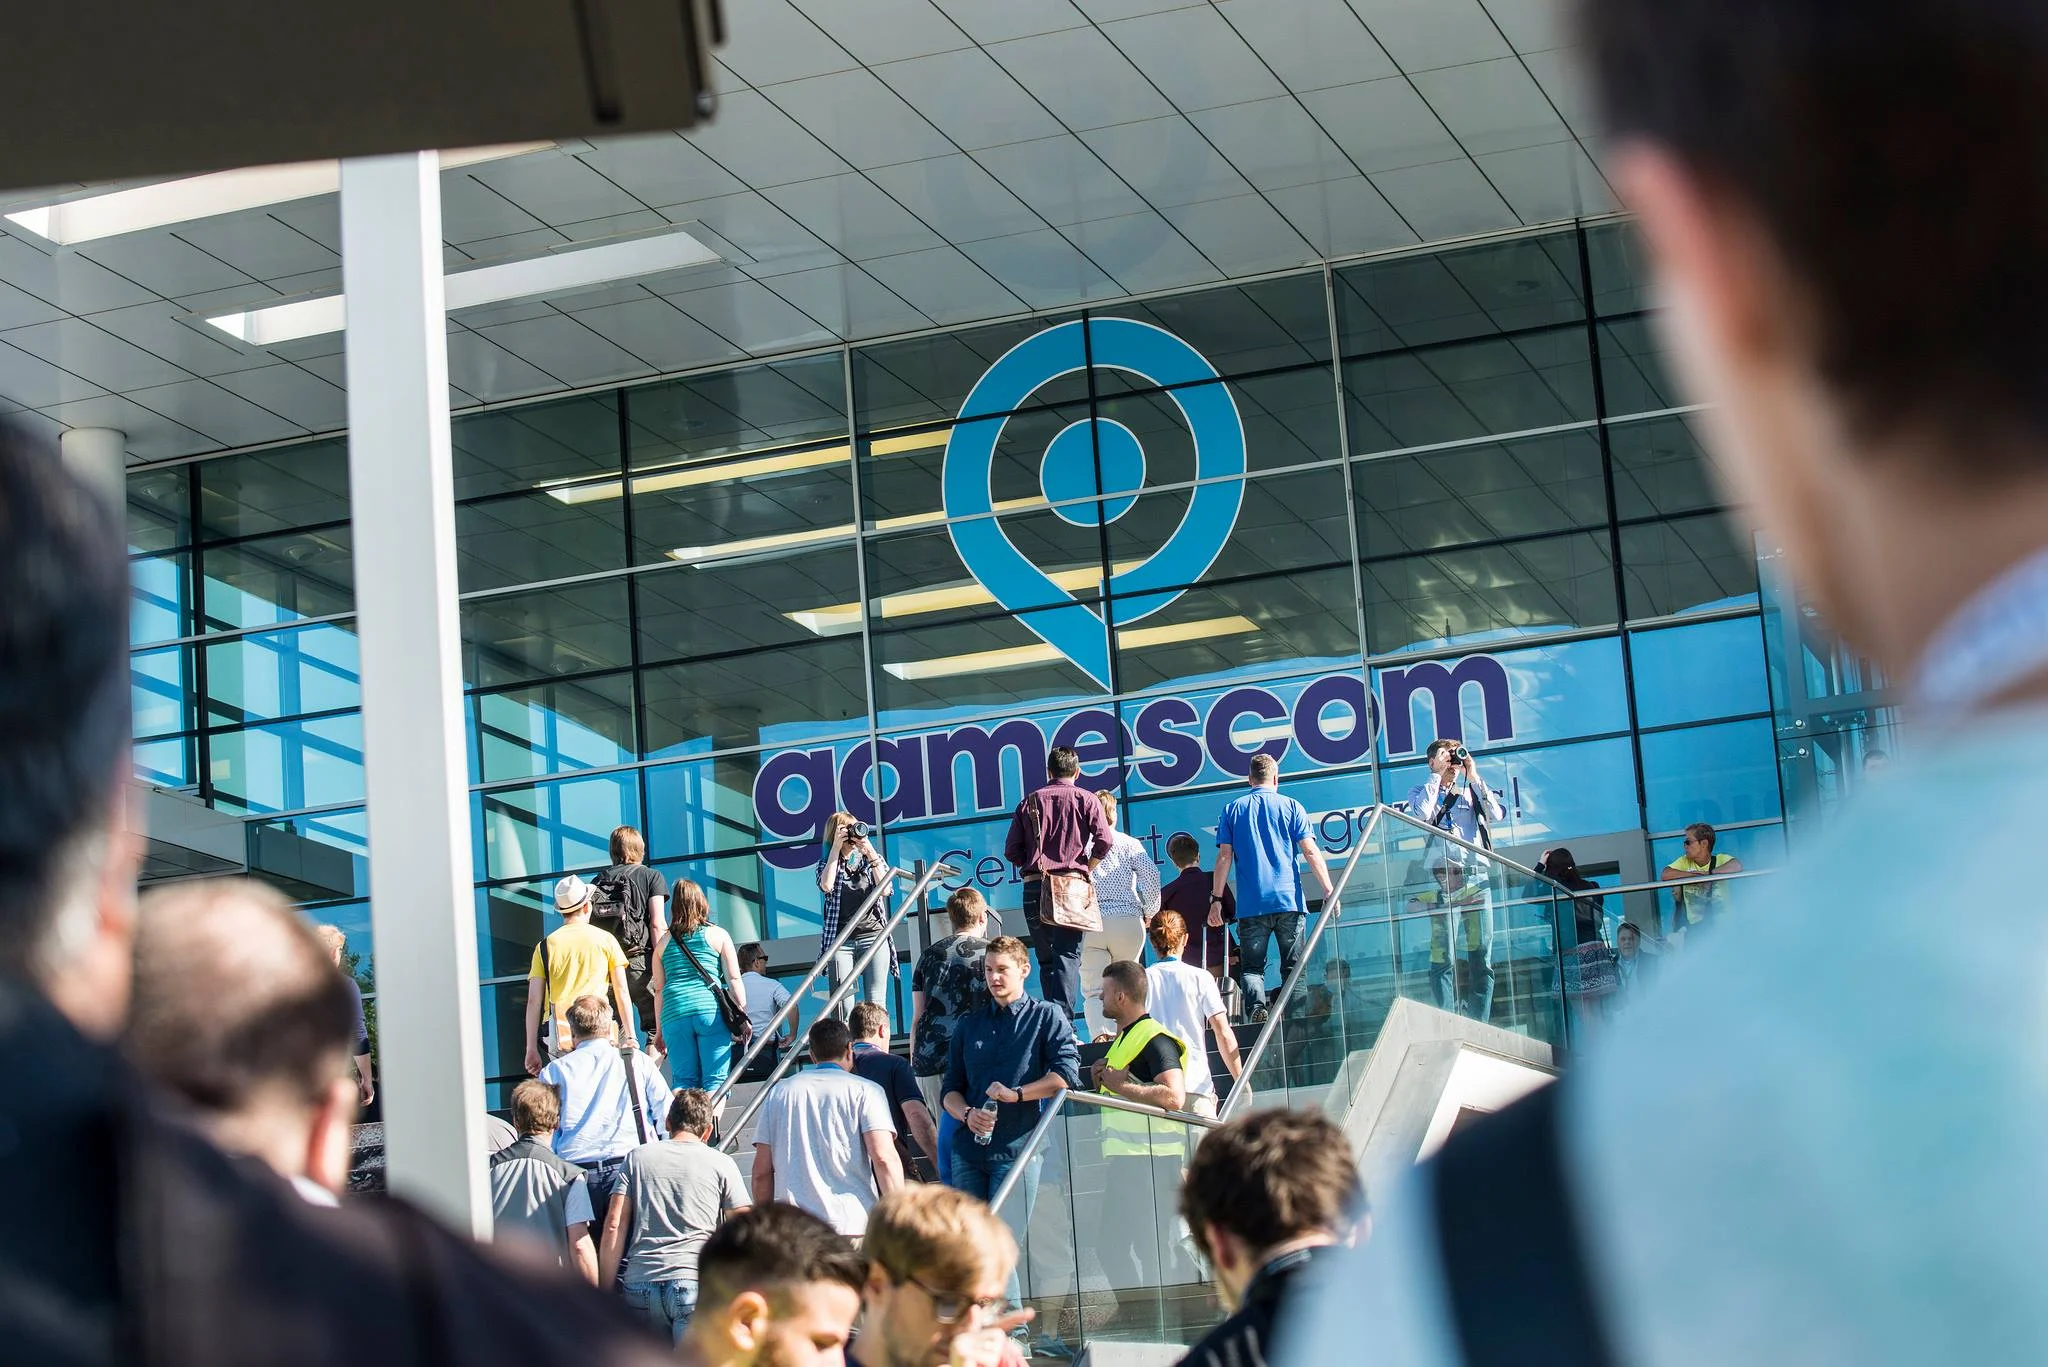 21 августа в немецком Кёльне начнется один из главных игровых ивентов в мире — Gamescom. О самых крутых играх, которые там покажут в этом году, мы будем много писать всю ближайшую неделю, а сейчас давайте вспомним, как выставка менялась на протяжении последних девяти лет.